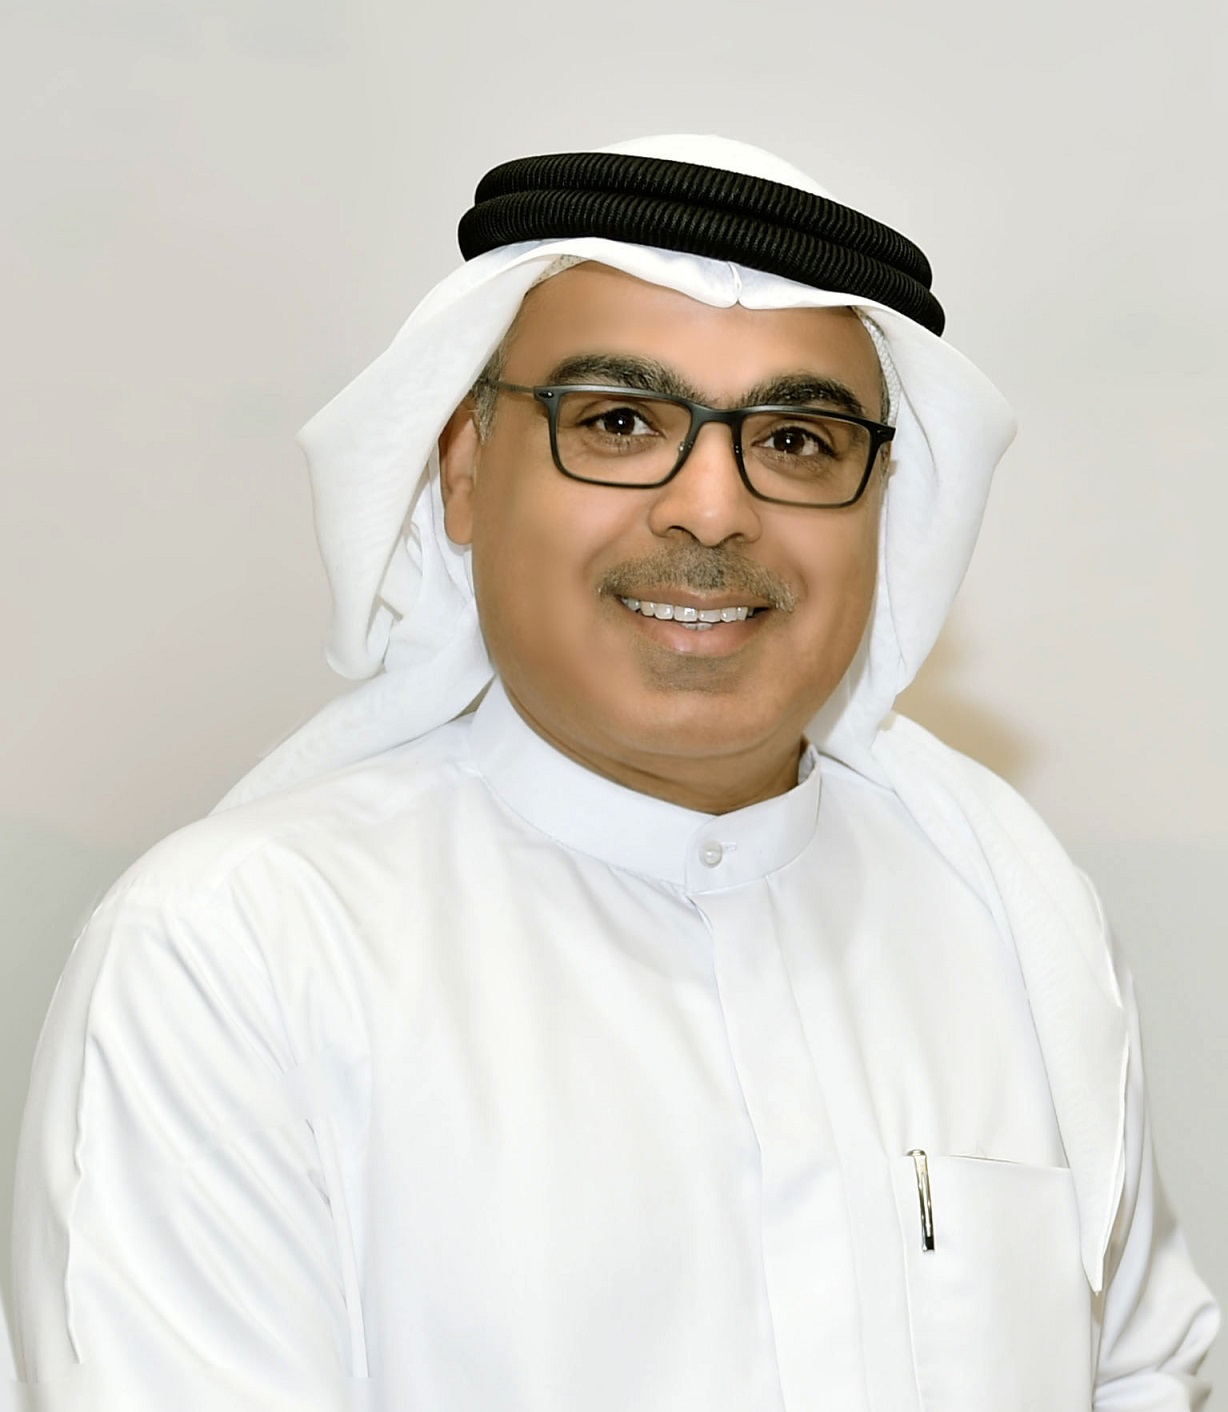 سعادة الدكتور عبدالعزيز المسلم رئيس معهد الشارقة للتراث